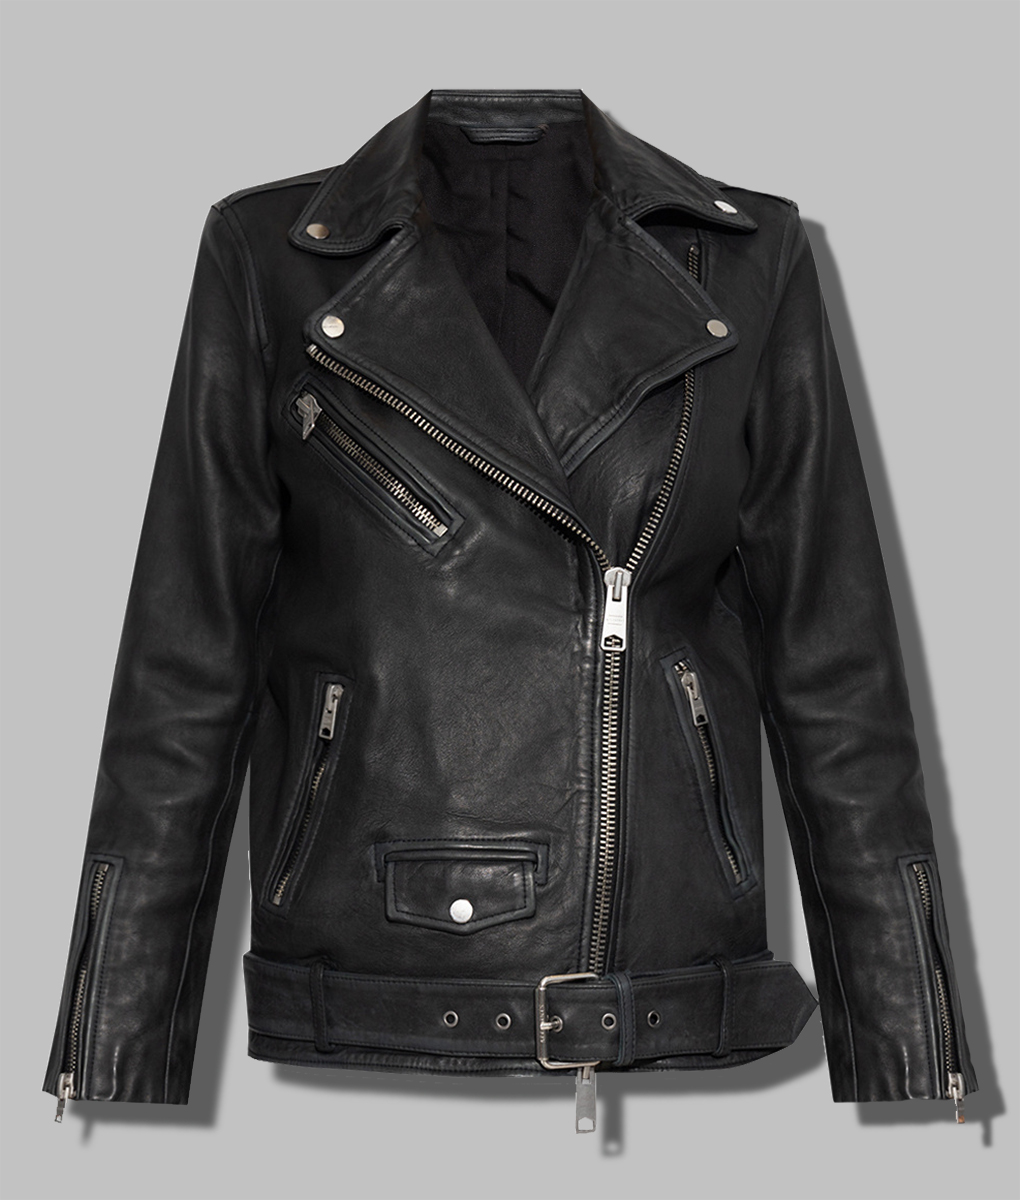 Lydia West Big Mood Black Leather Jacket (3)